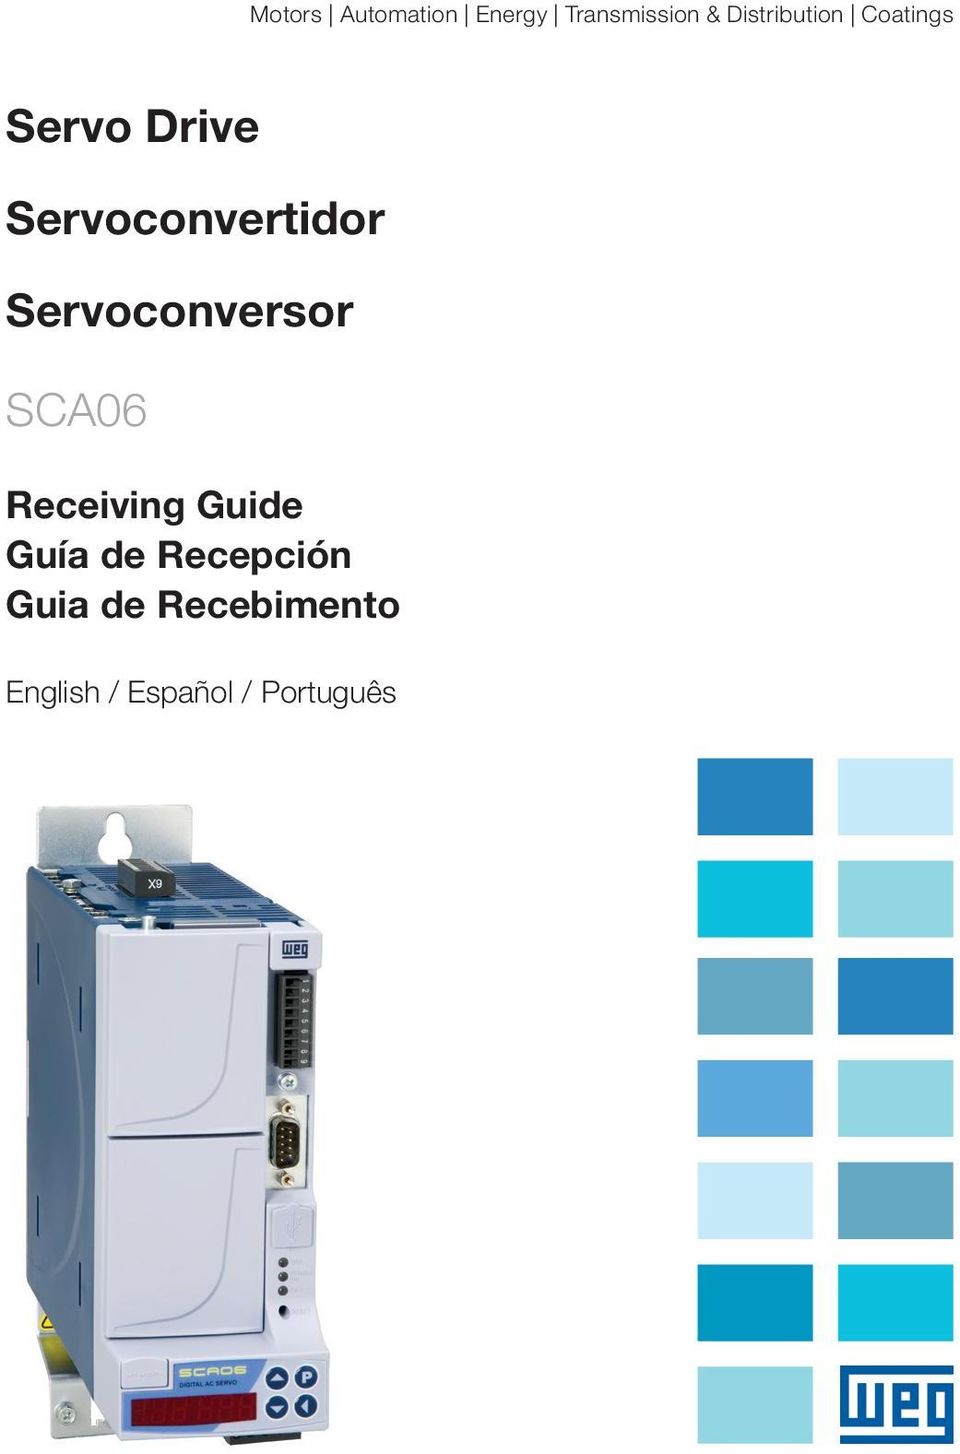 Servoconvertidor Servoconversor SCA06 Receiving